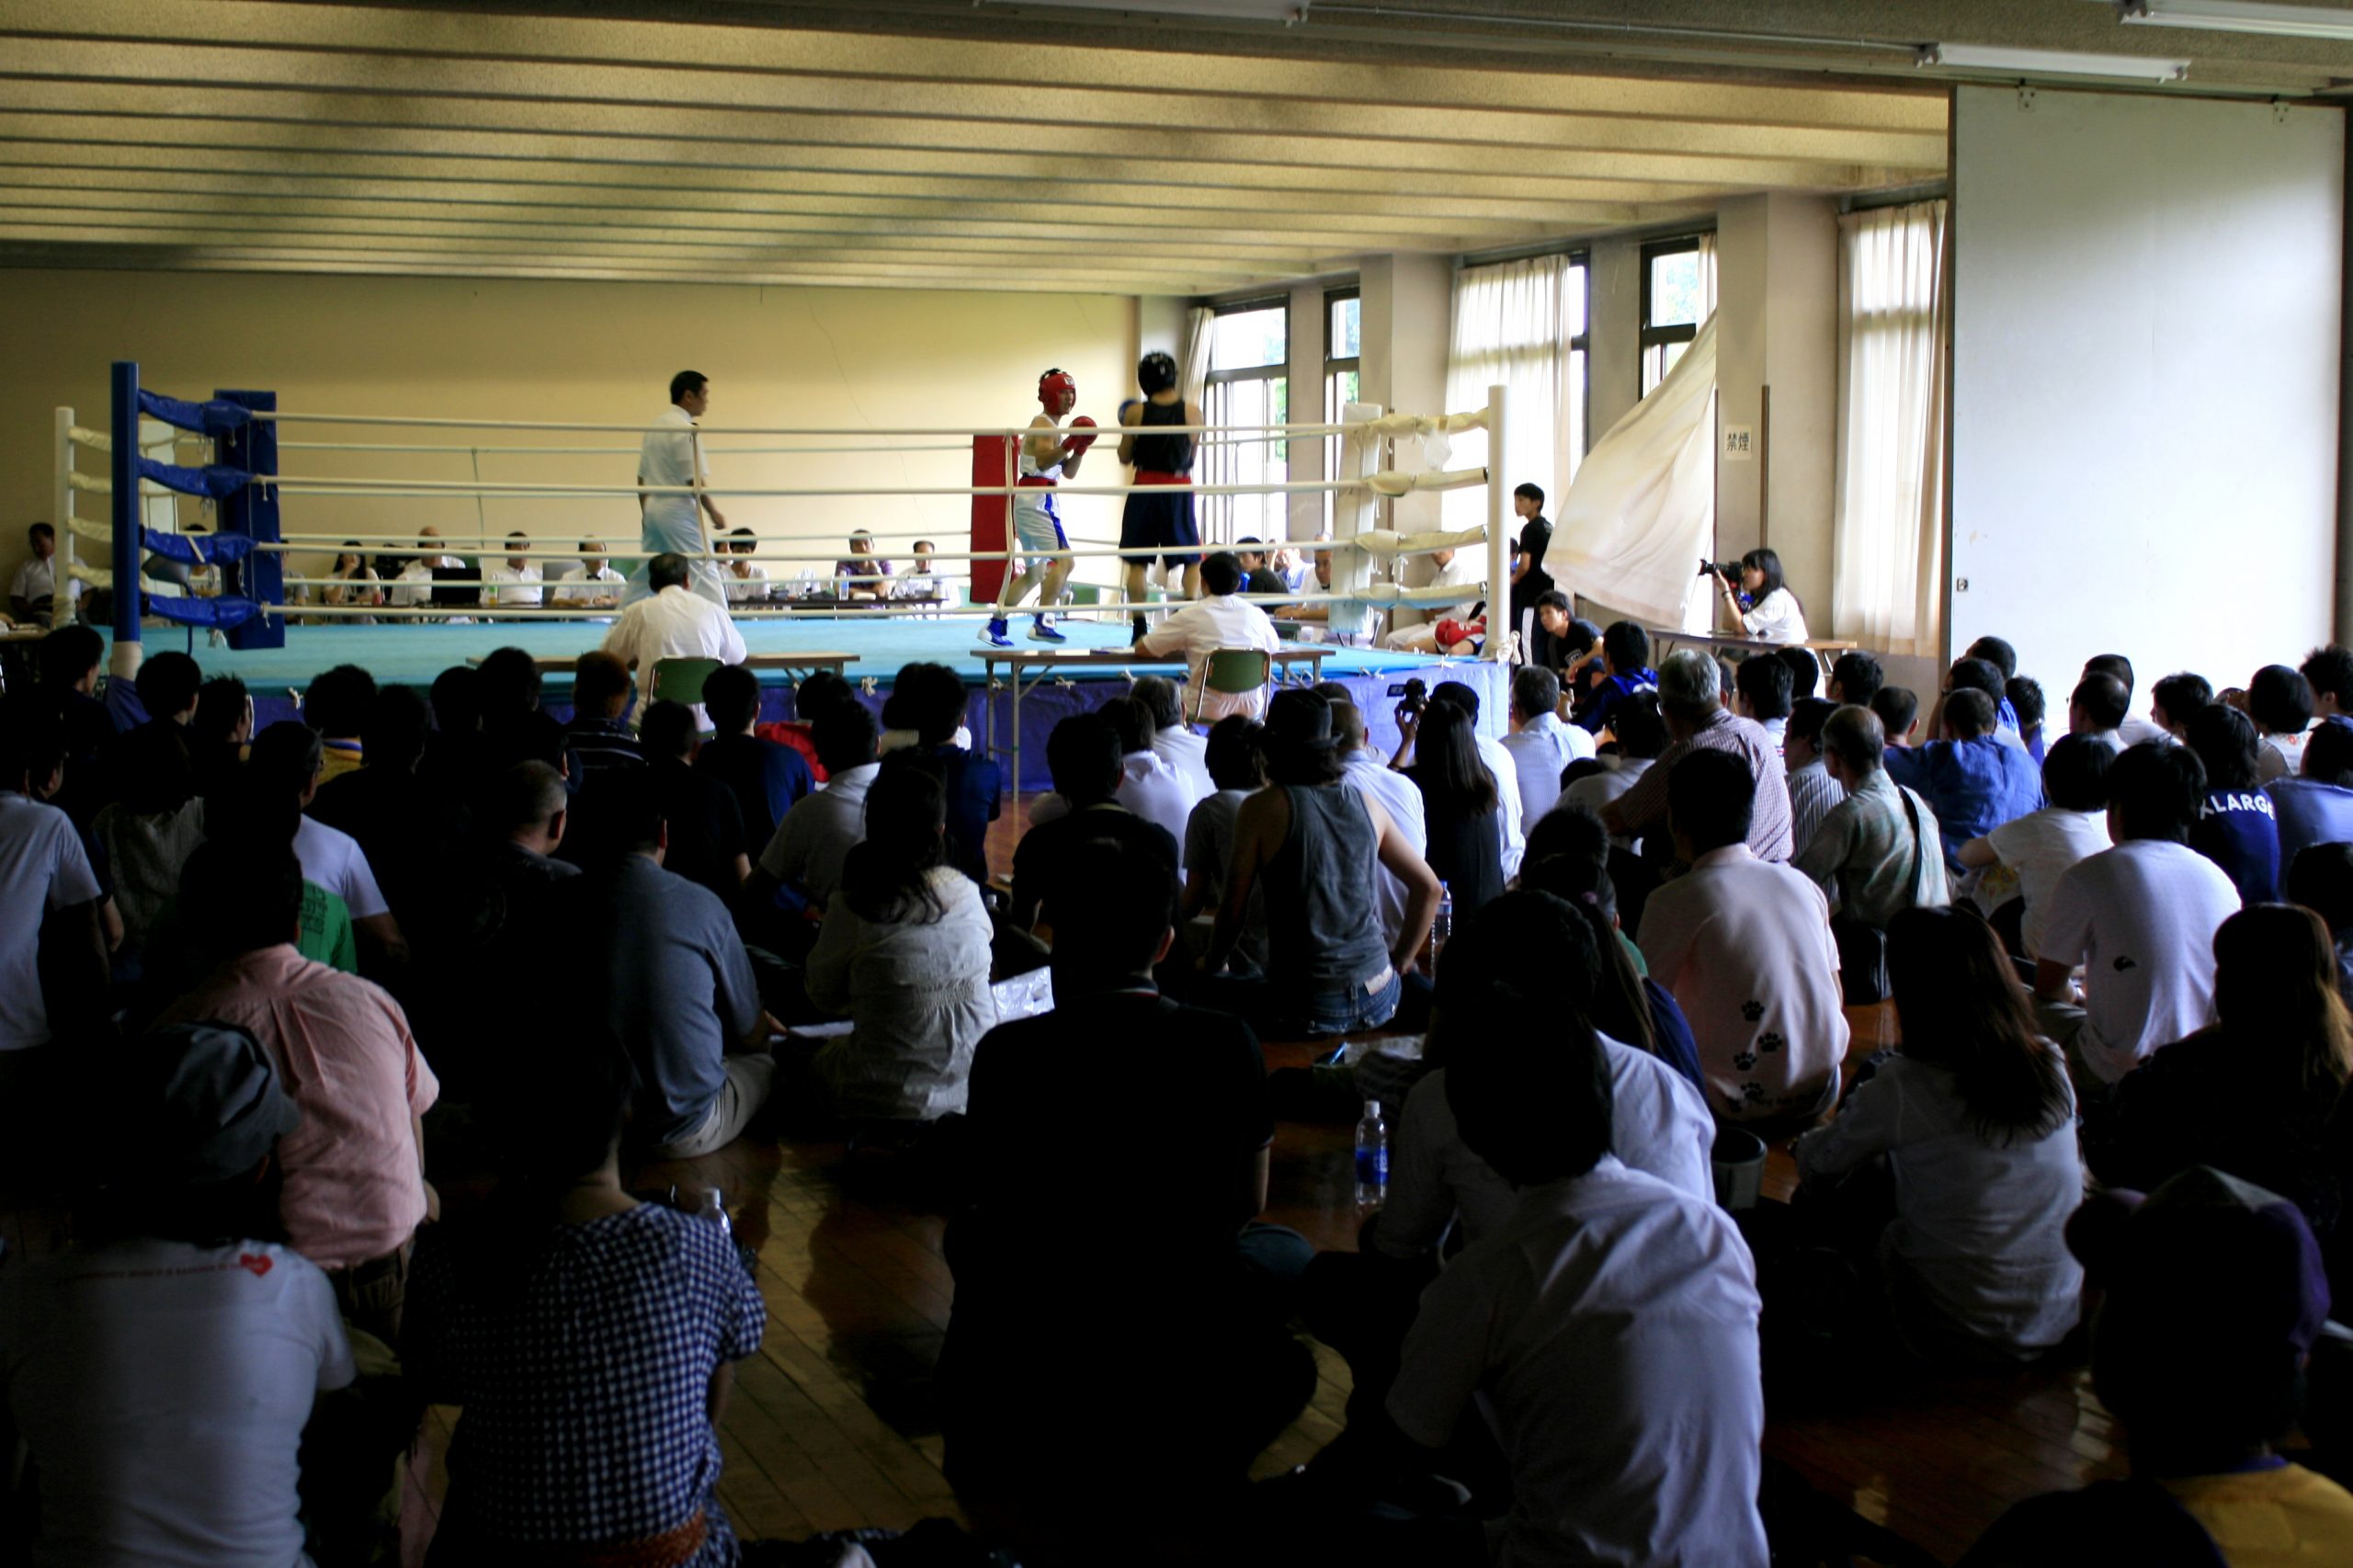 関東 神奈川 善行の ボクシング聖地 が改称でリニューアル 旧 神奈川県立体育センター 日本ボクシング連盟